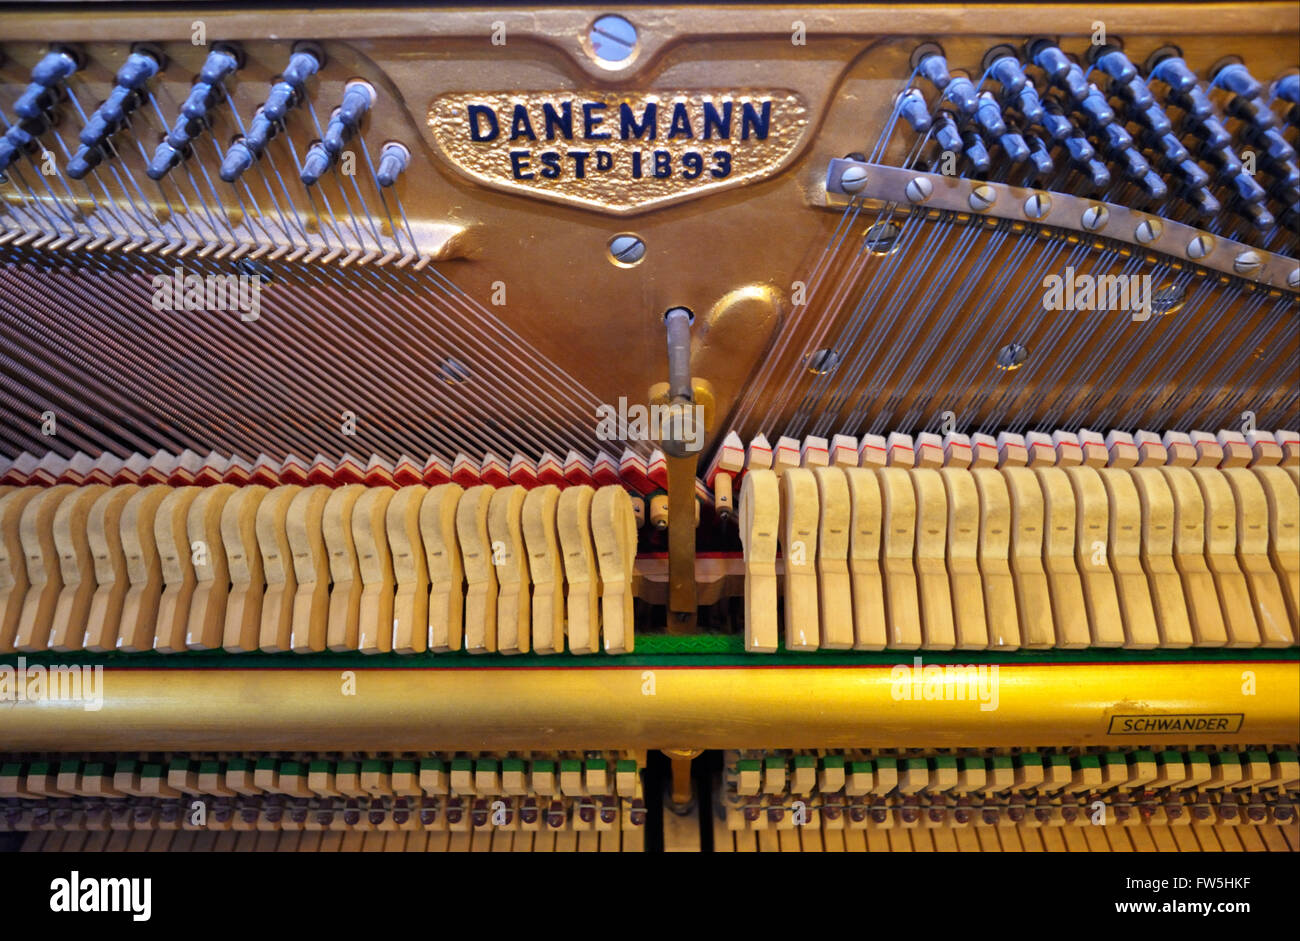 Meccanismo di pianoforte - logo, stringhe piroli, martelli, azione, smorzatori di Danemann overtrung pianoforte verticale c.1960-70, come usato nelle scuole Foto Stock